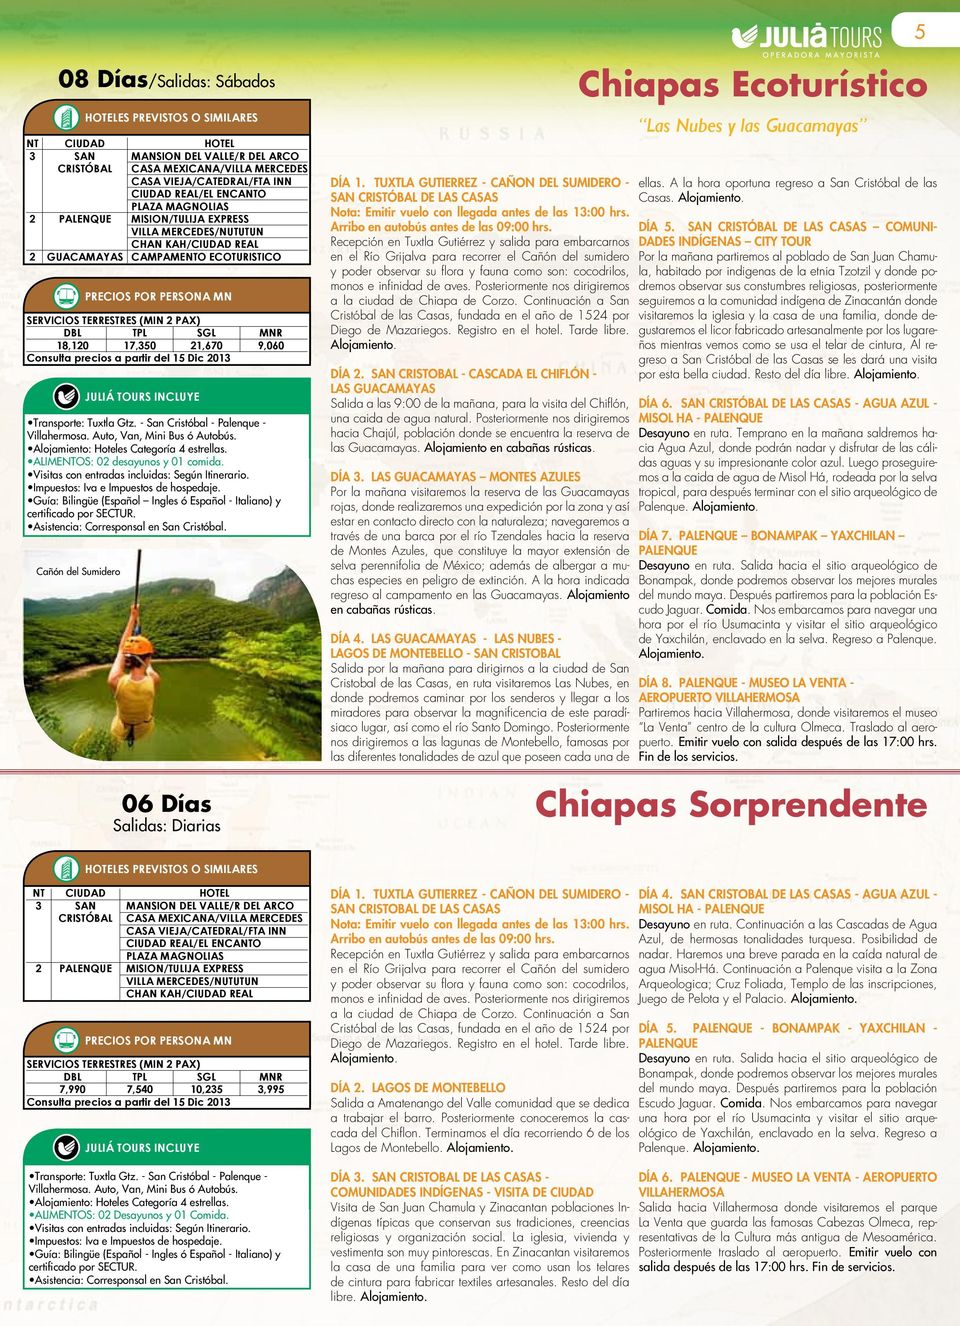 Guía: Bilingüe (Español Ingles ó Español - Italiano) y certificado por SECTUR. Asistencia: Corresponsal en San Cristóbal.